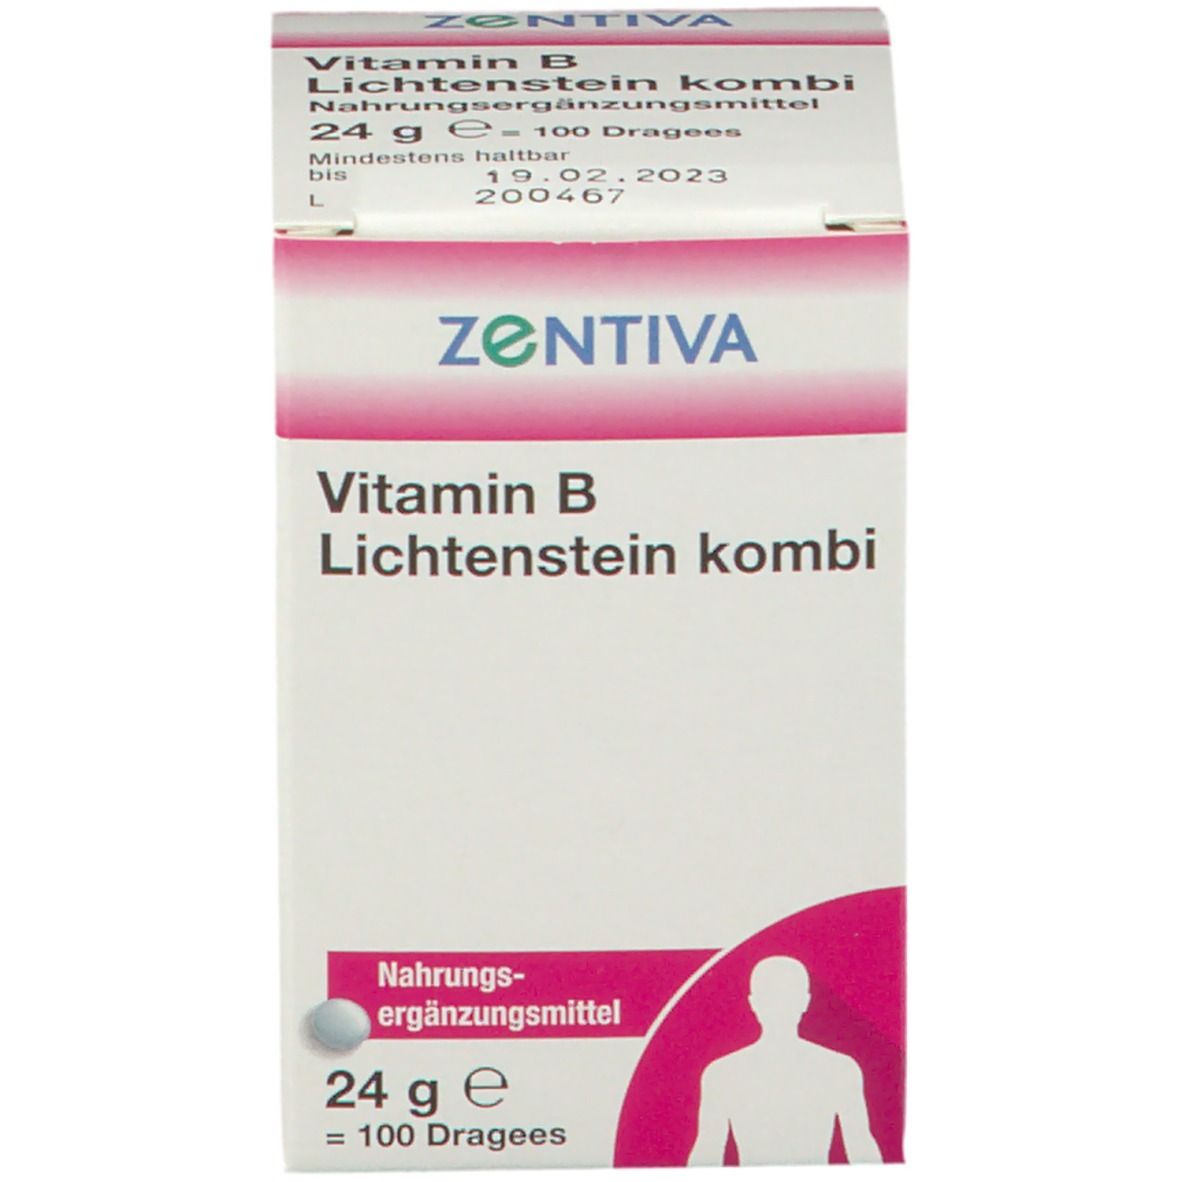 Vitamin B Lichtenstein kombi